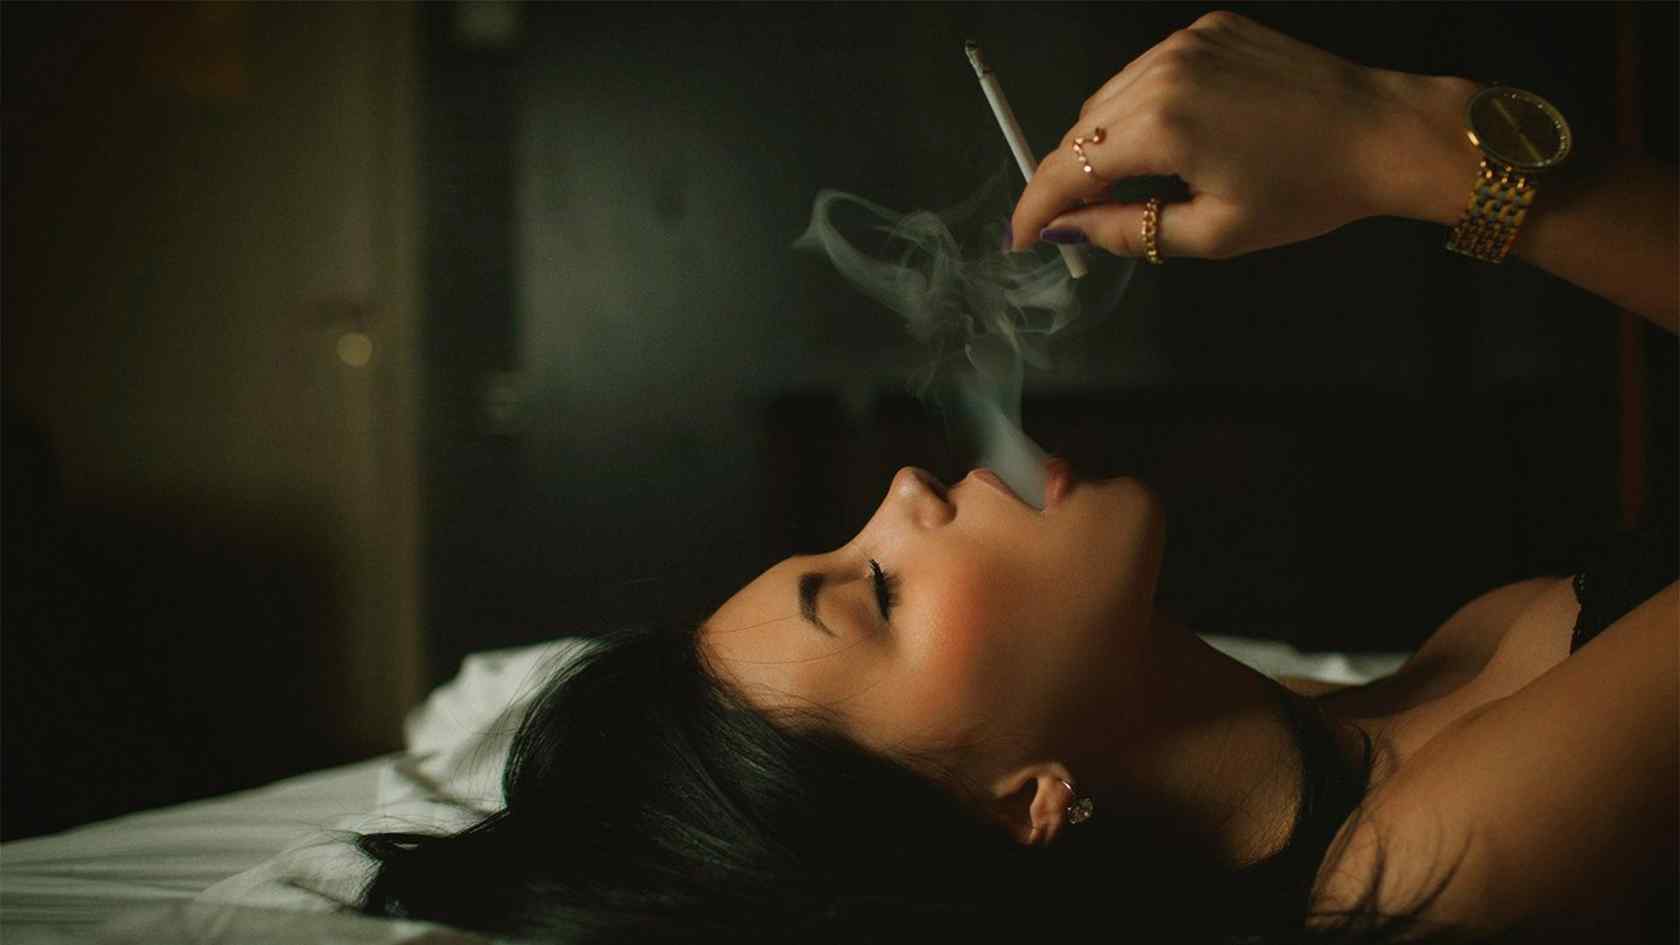 壁纸 人物 美女壁纸 抽烟的女人性感写真图片